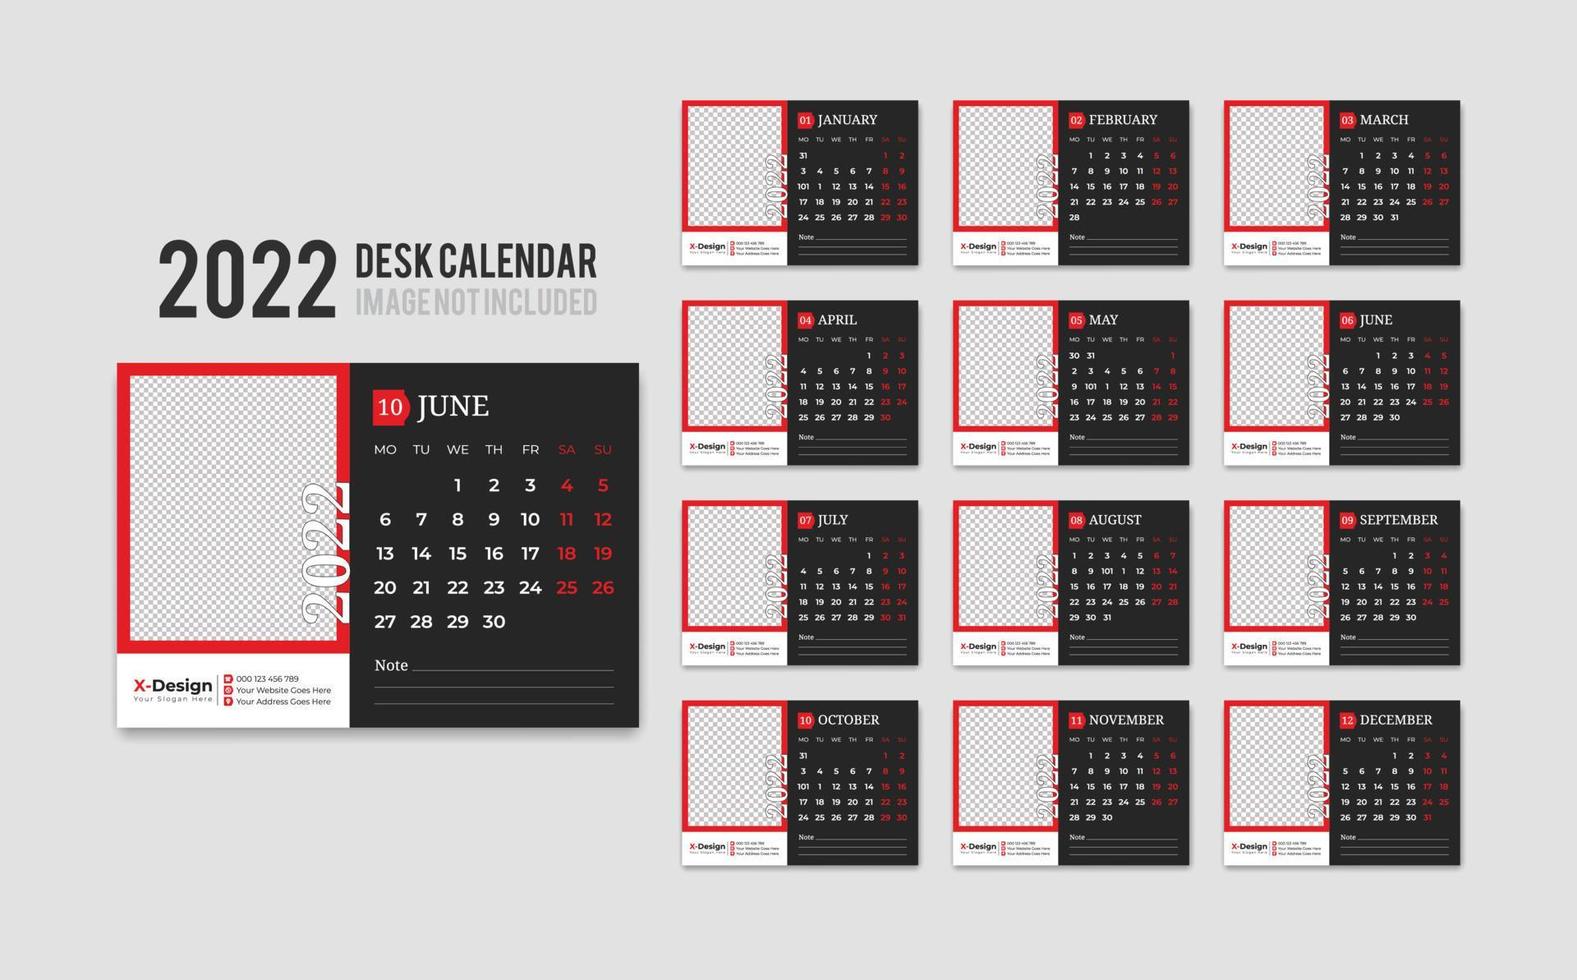 plantilla de calendario de escritorio lista para imprimir para el año 2022, calendario de oficina mensual de escritorio 2022 la semana comienza el lunes, planificador anual vector